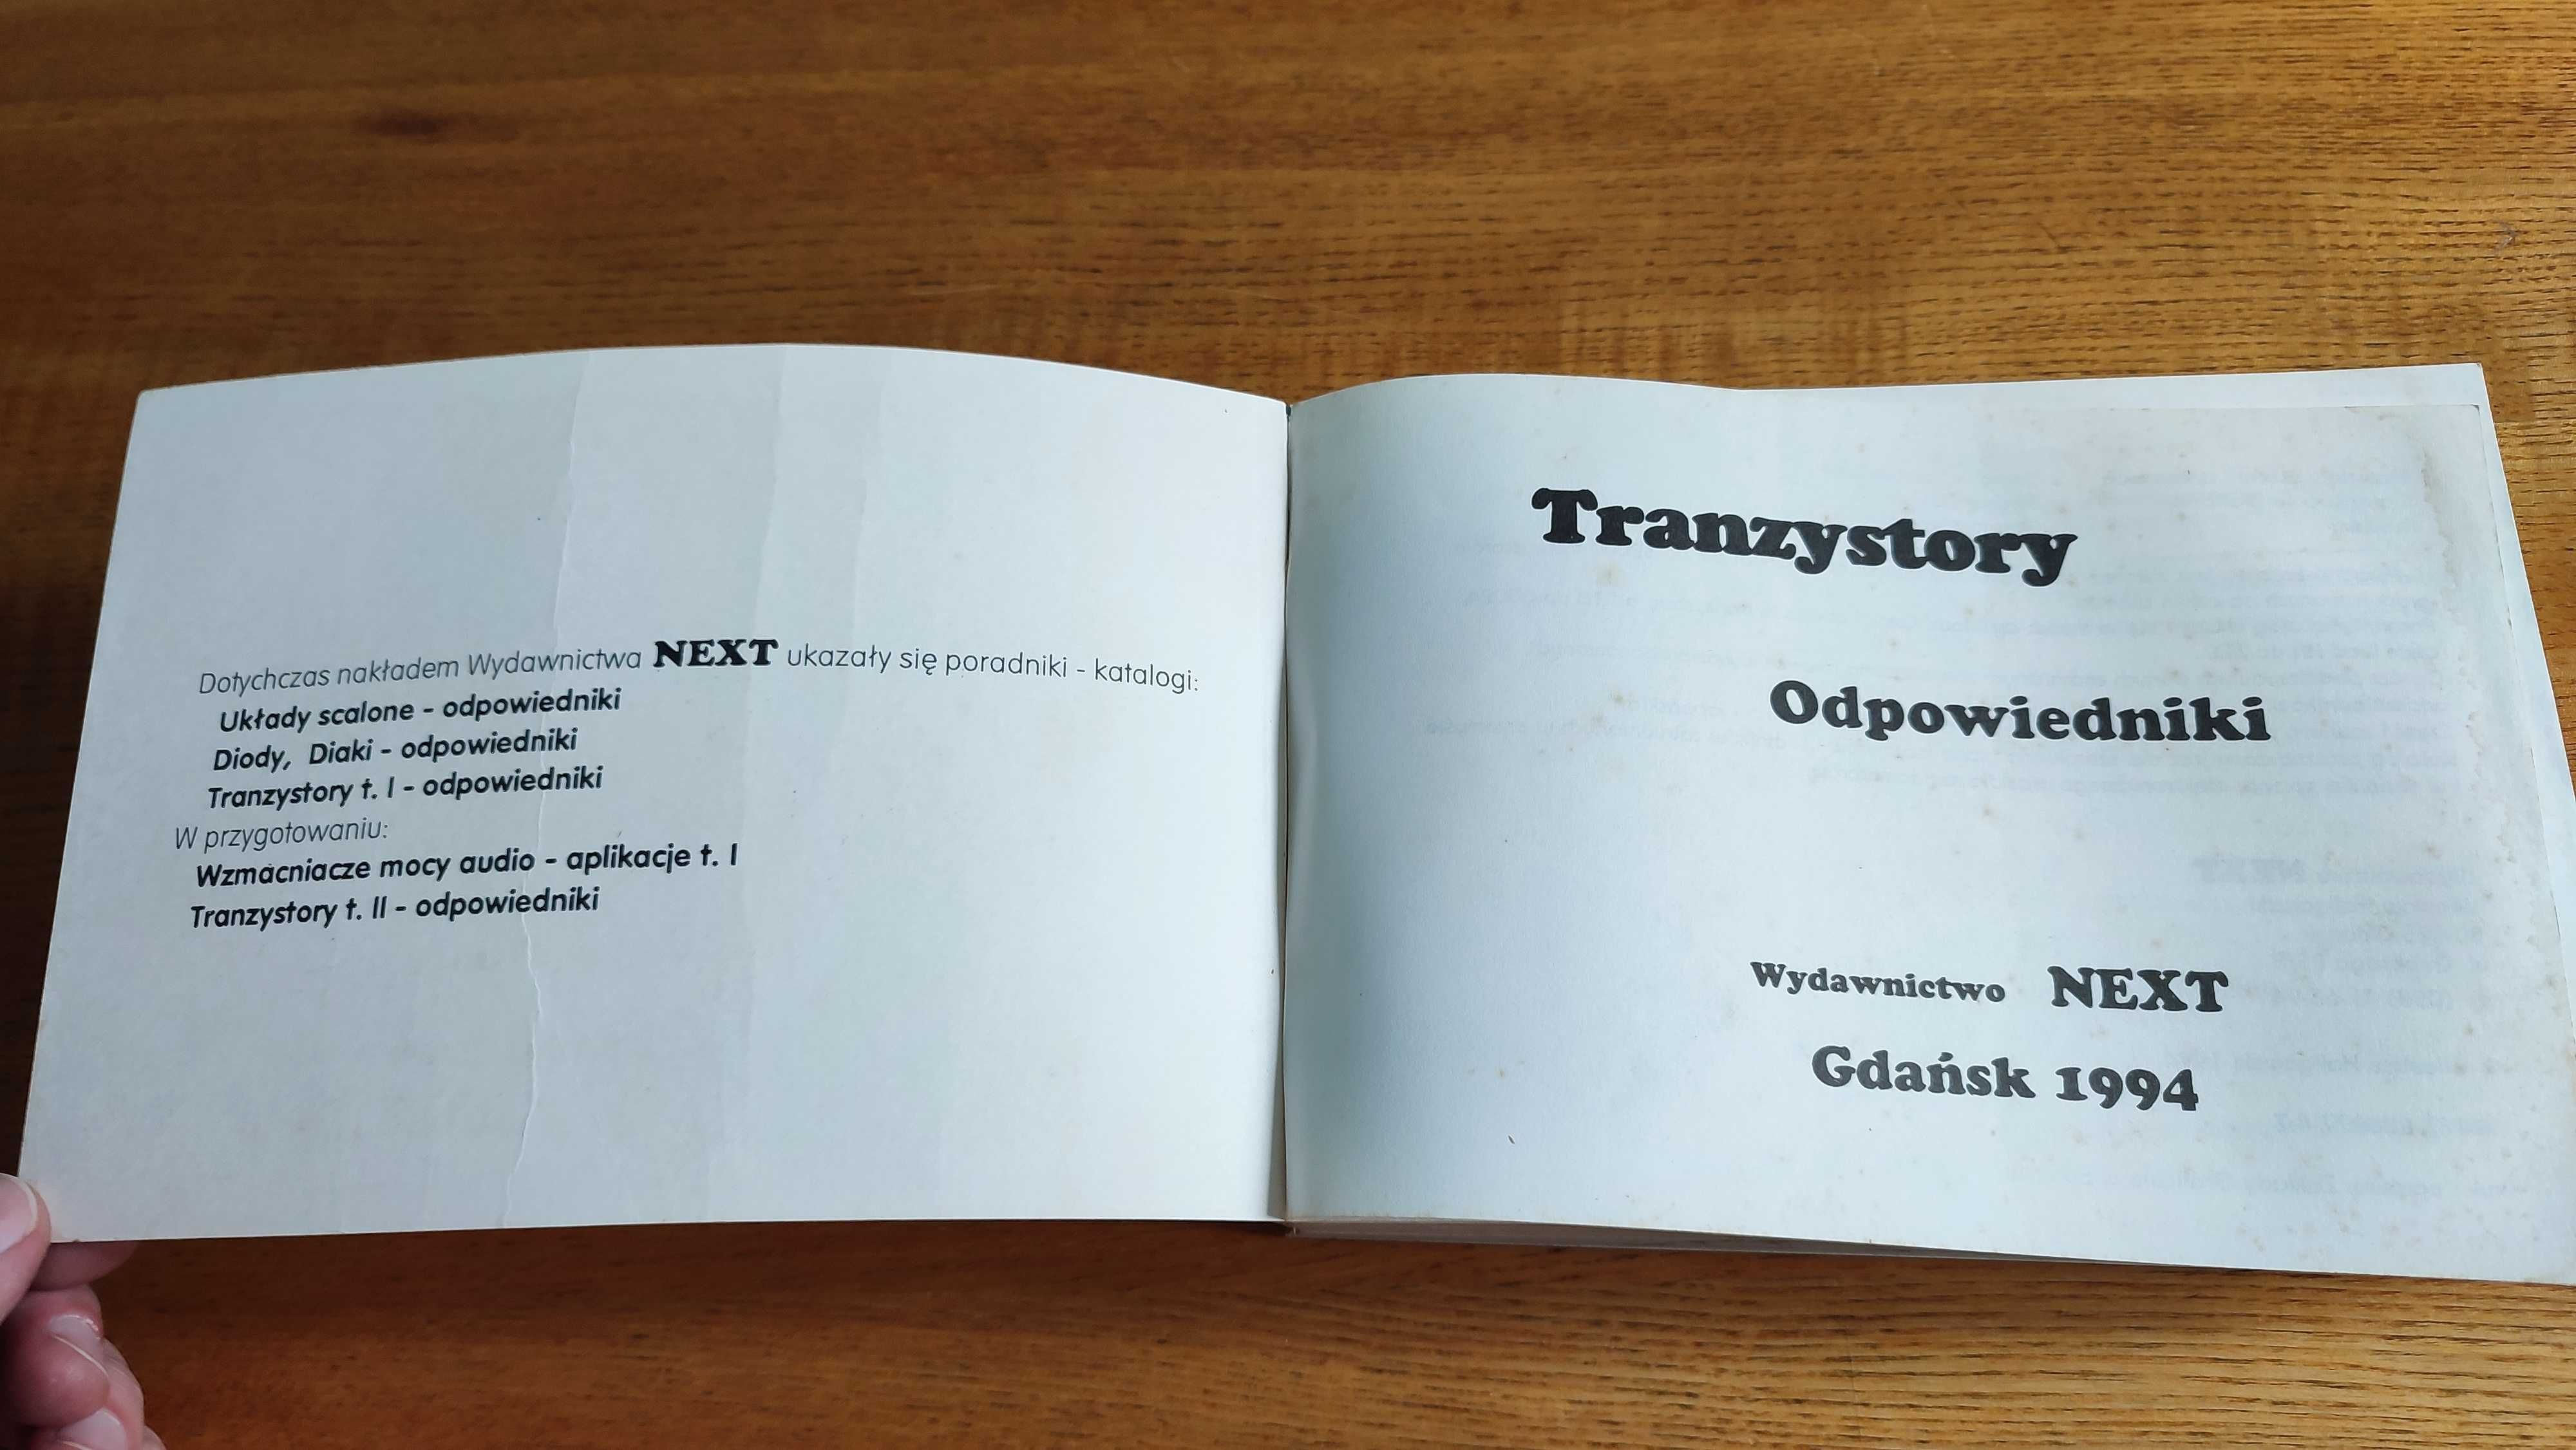 Tranzystory odpowiedniki katalog